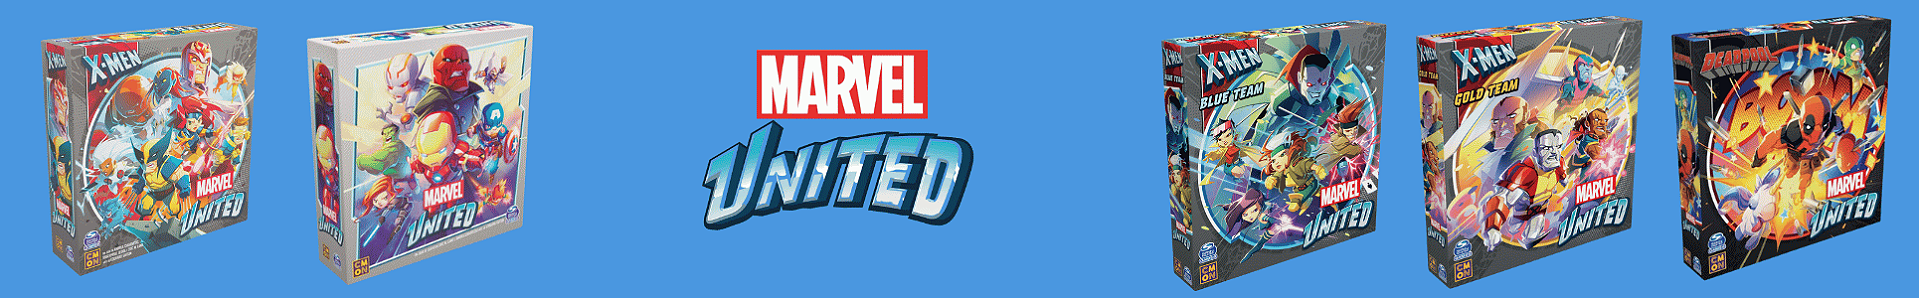 Linha Marvel United